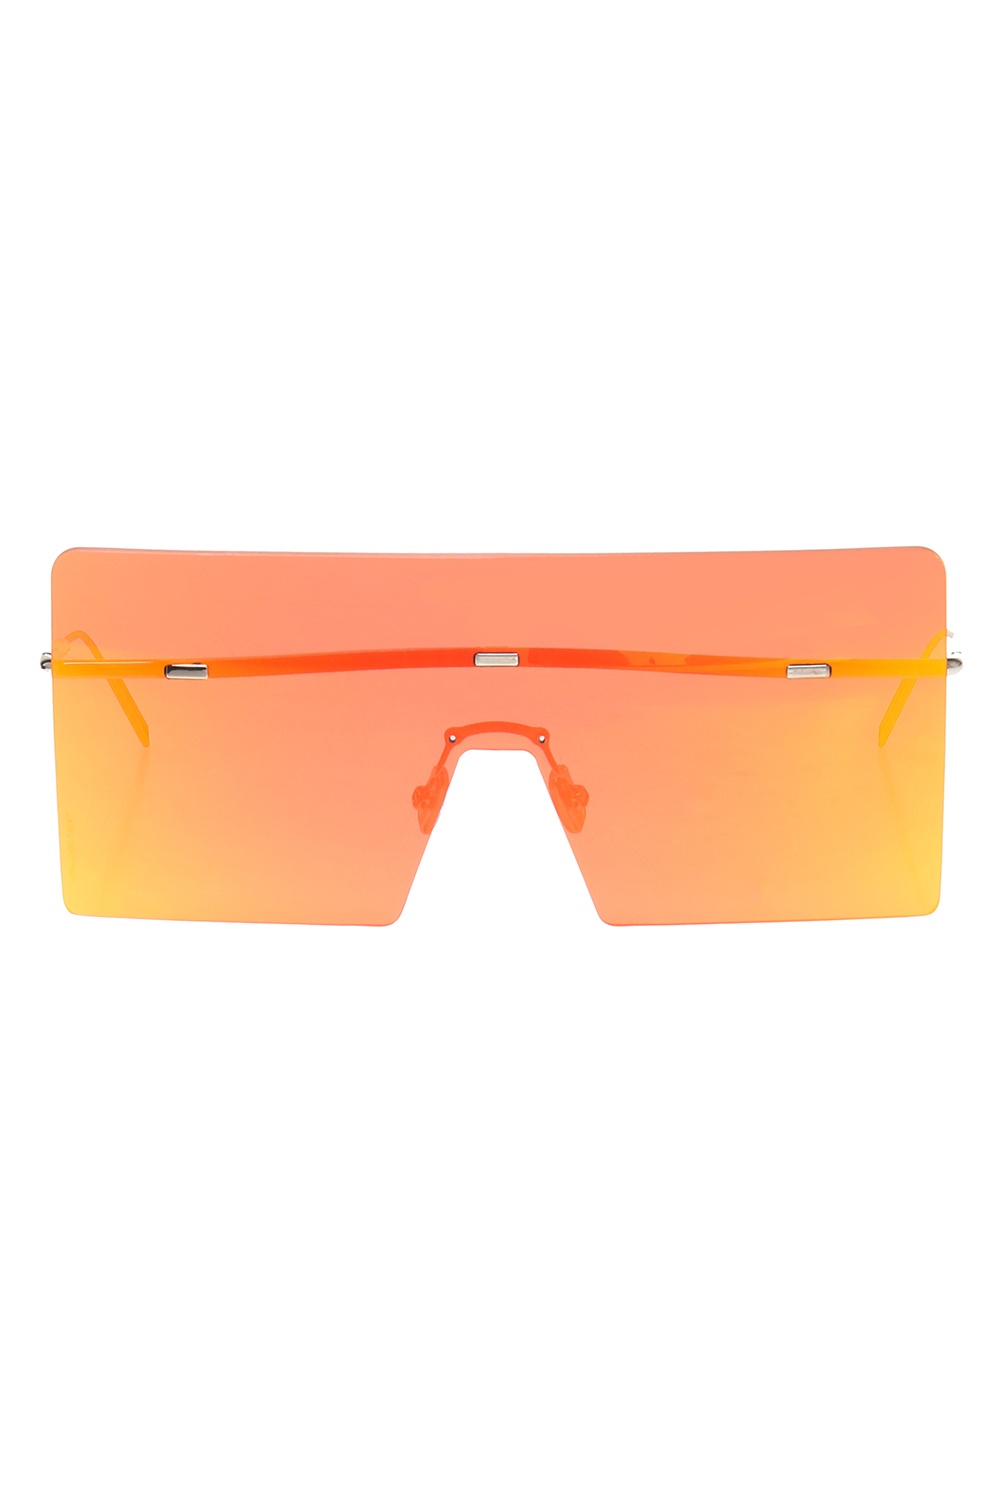 dior hardior sunglasses